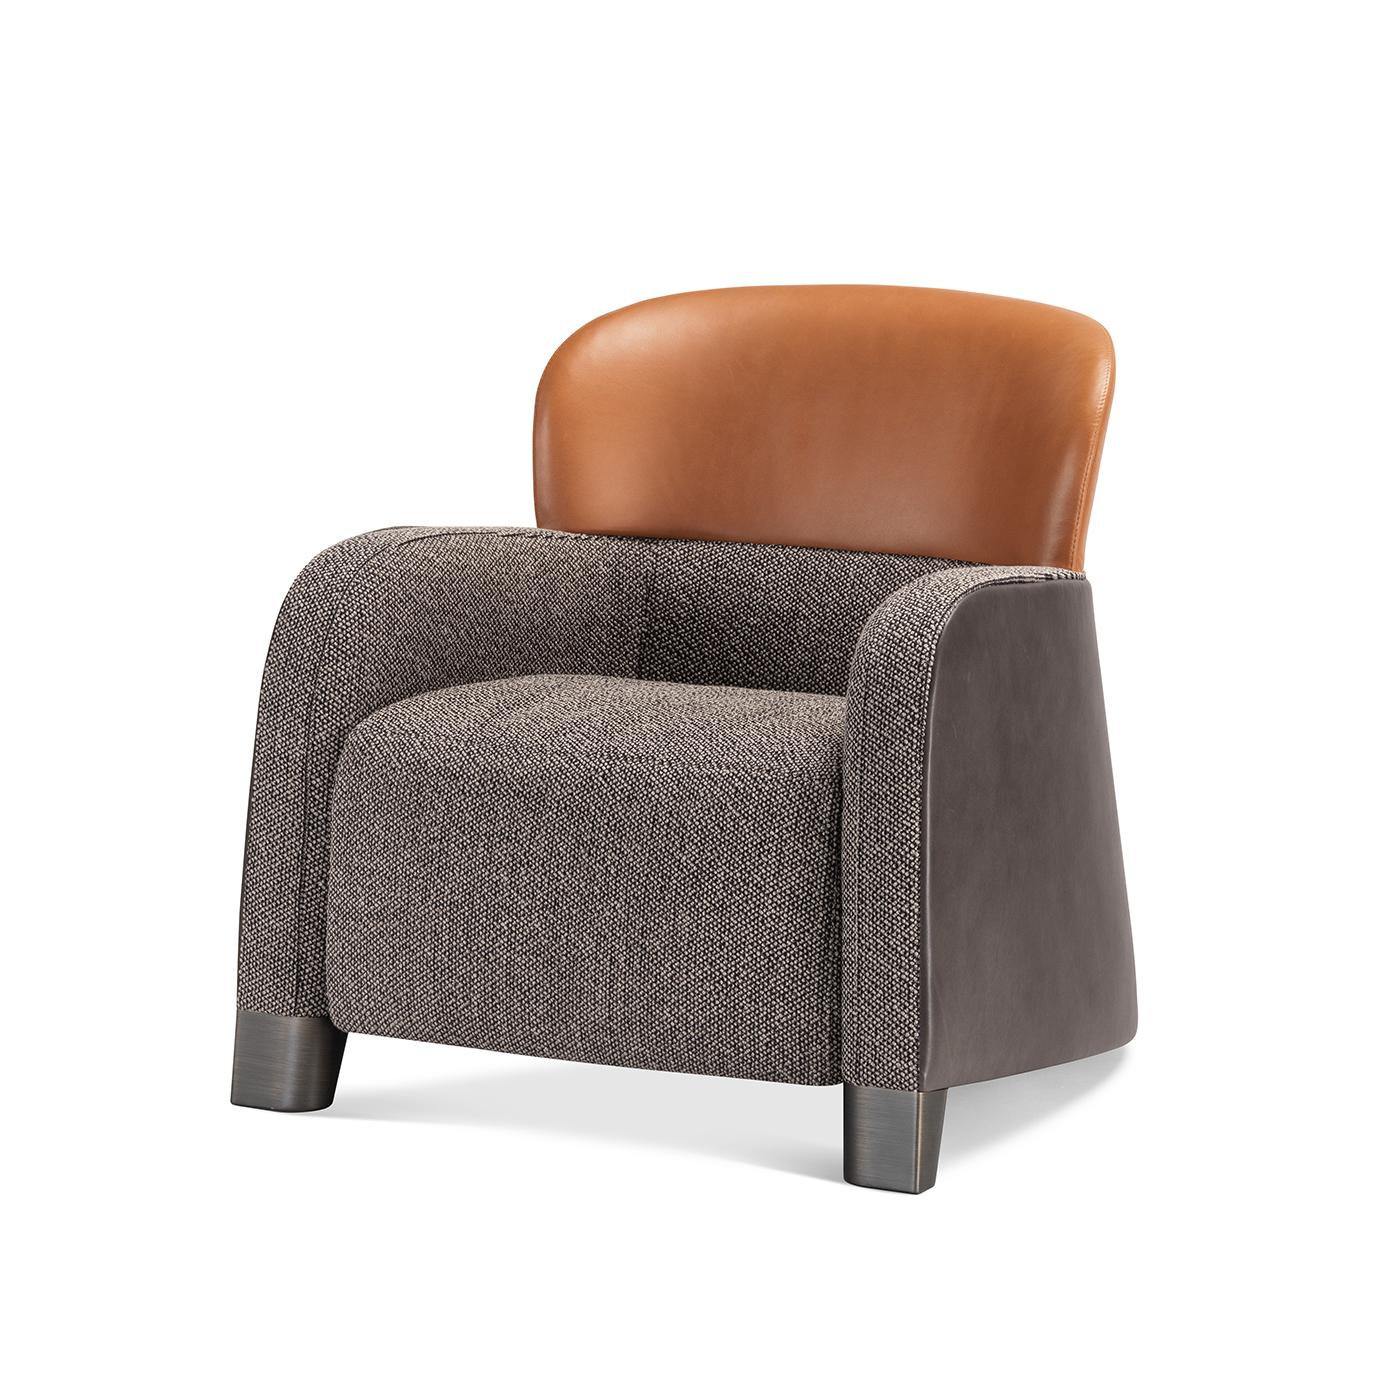 Parfait pour mettre en valeur un bureau privé ou une chambre à coucher moderne et luxueuse, ce fauteuil compact allie une qualité de fabrication exceptionnelle à un savant mélange de matériaux. La coque du siège, enveloppée de tissu gris et